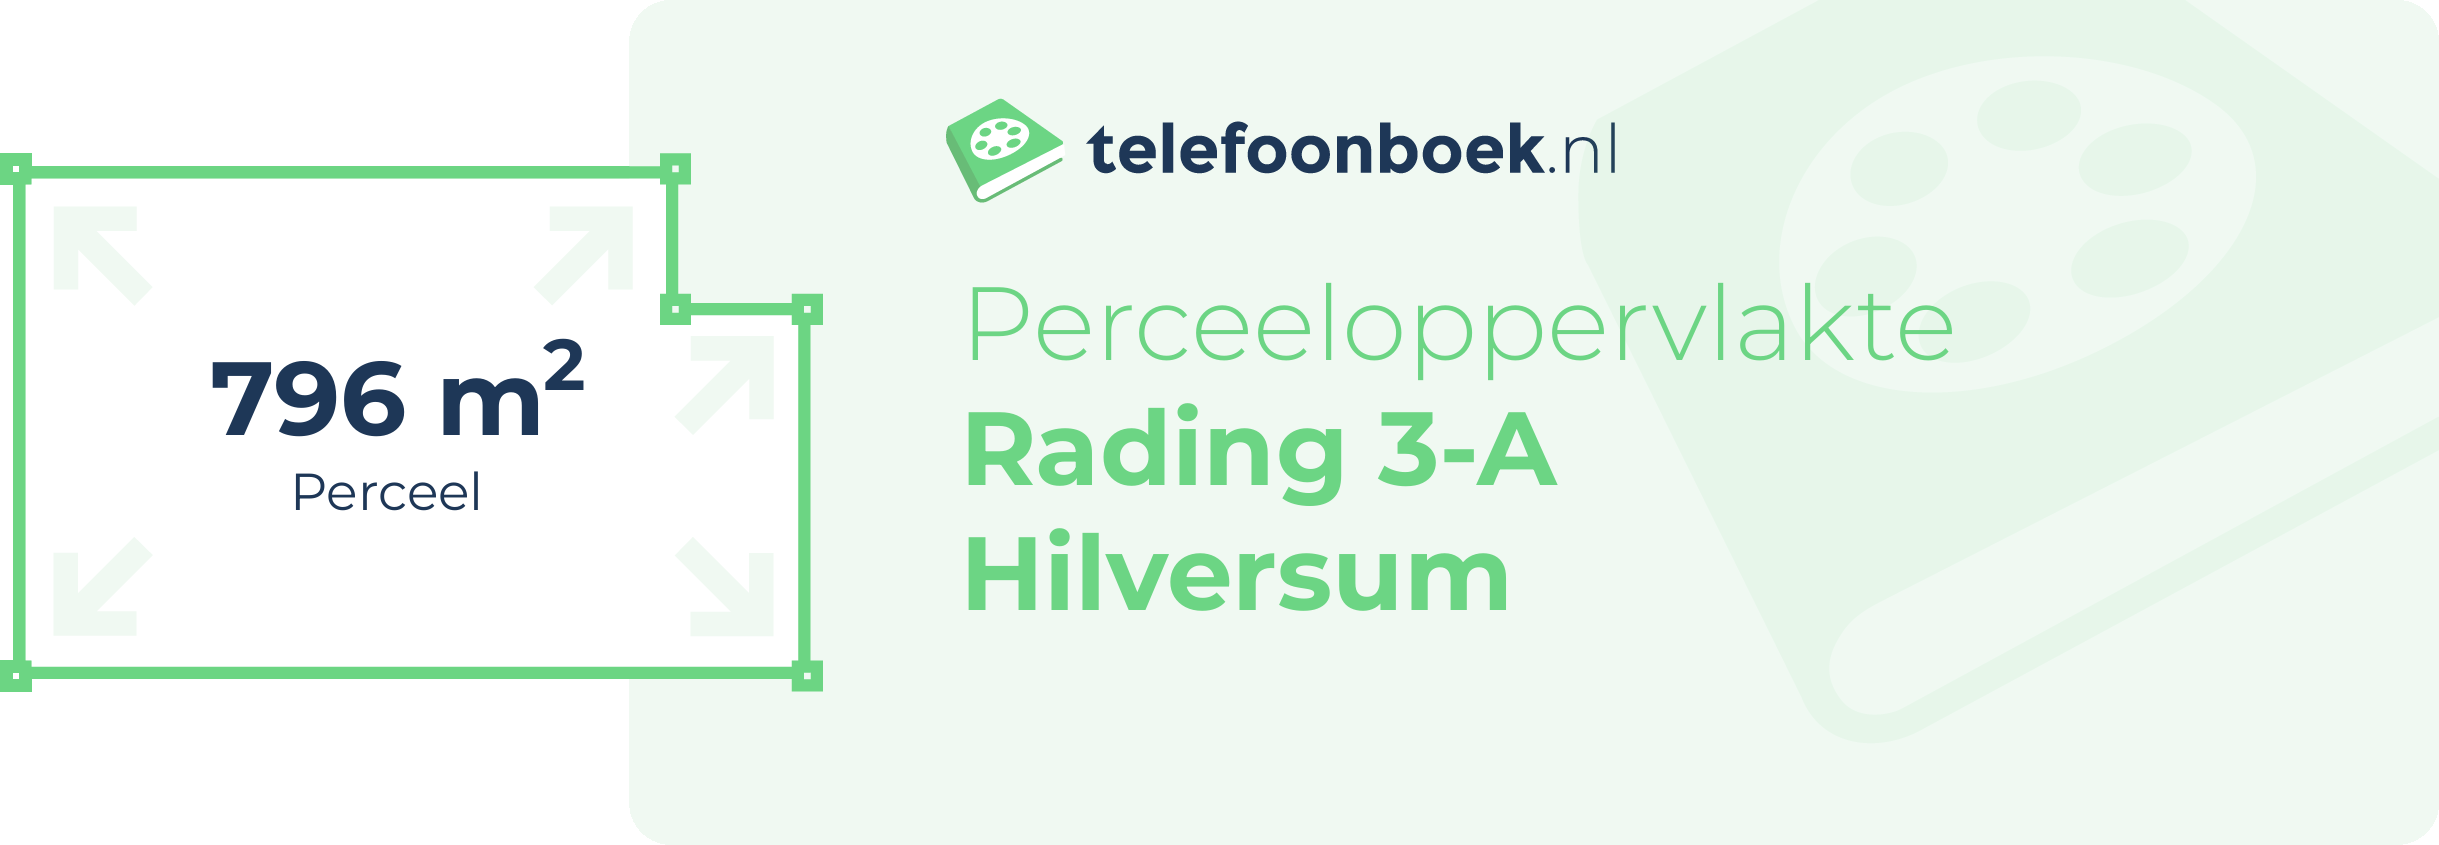 Perceeloppervlakte Rading 3-A Hilversum